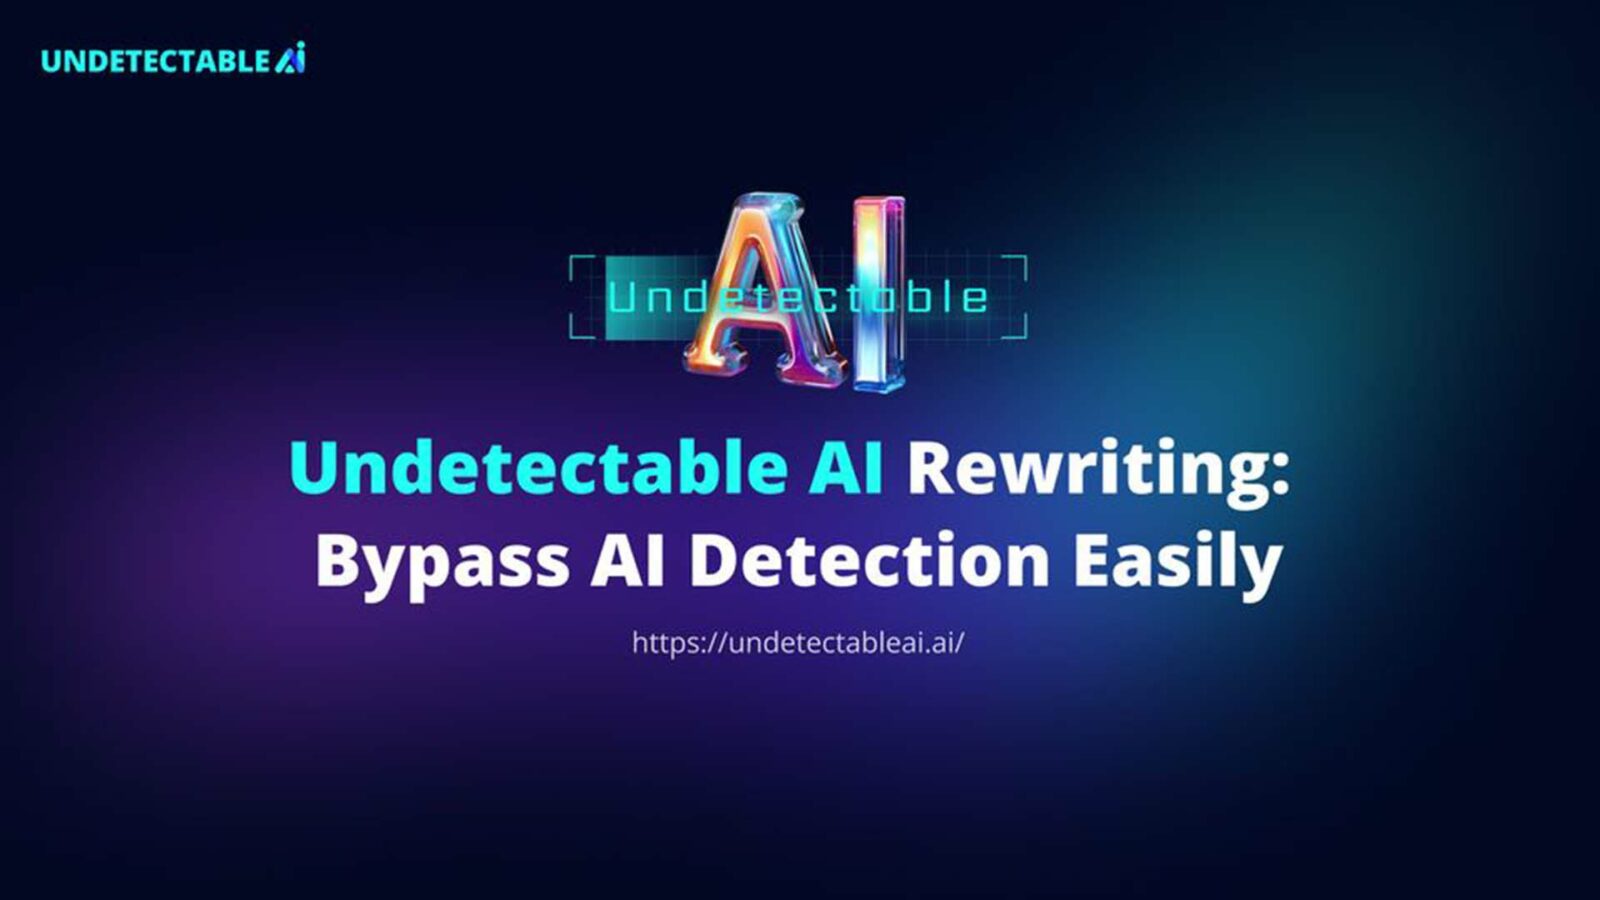 La imagen muestra un anuncio digital con las palabras "reescritura de IA indetectable: evite la detección de IA fácilmente" encima de la URL de un sitio web sobre un fondo azul.